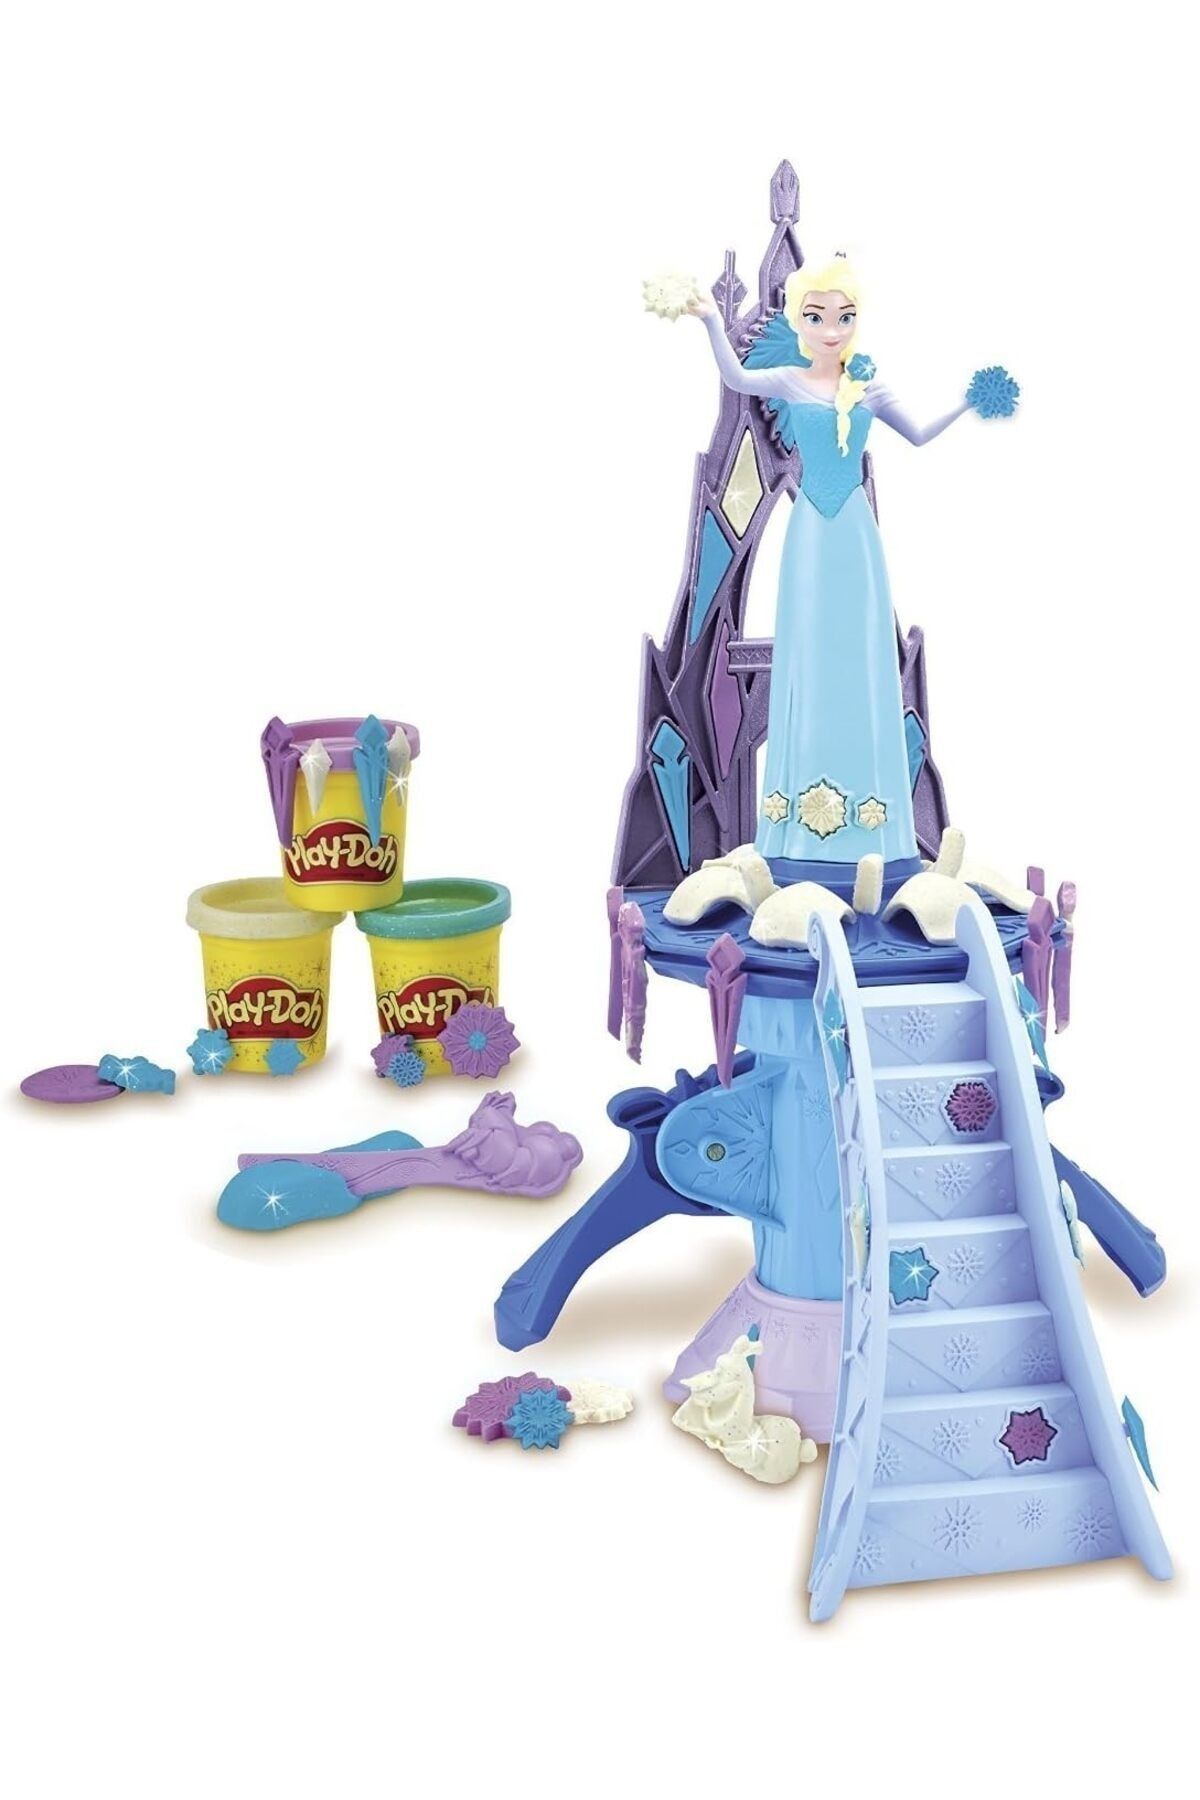 Hasbro Play Doh Dısney Frozen Elsa'Nın Sarayı